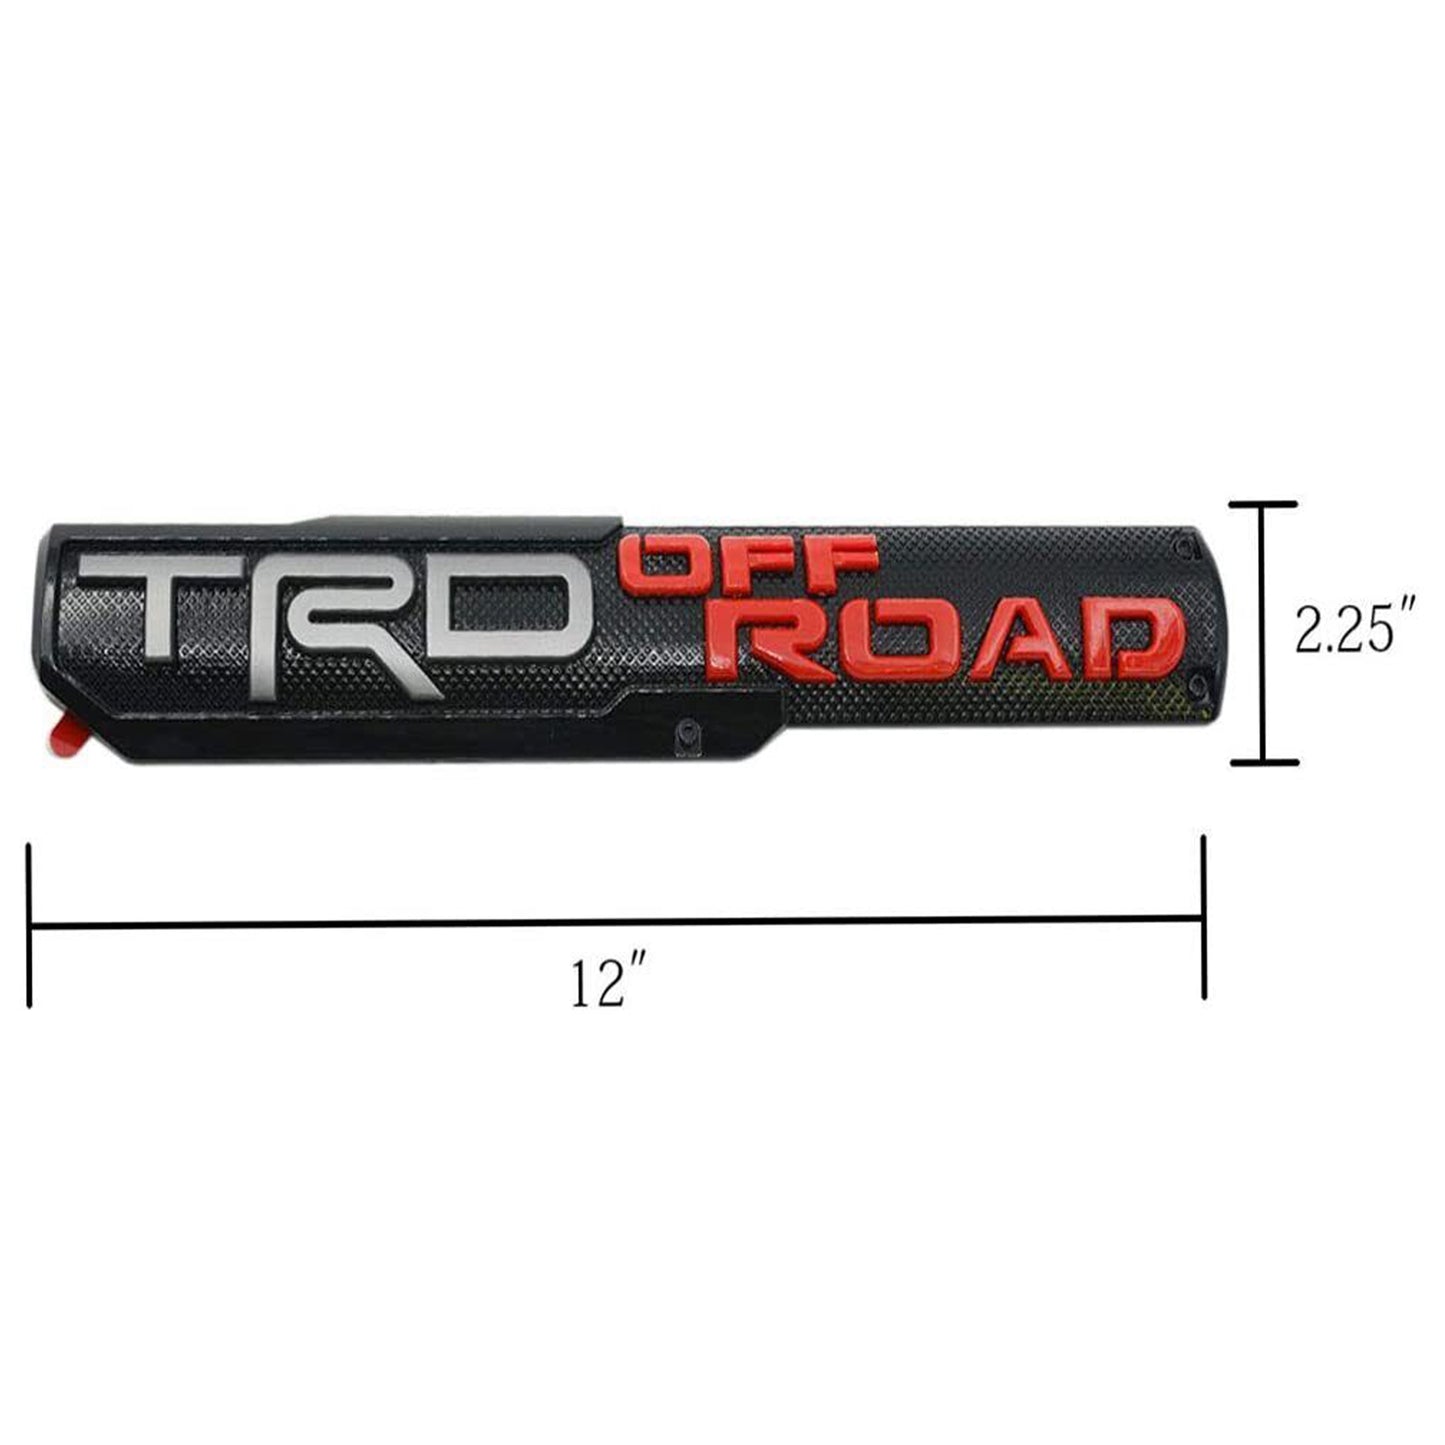 2x Trd Off Road Emblem Sticker Badge Fit All Toyota Sport Pro Sr5 V6 4x4 Trucks